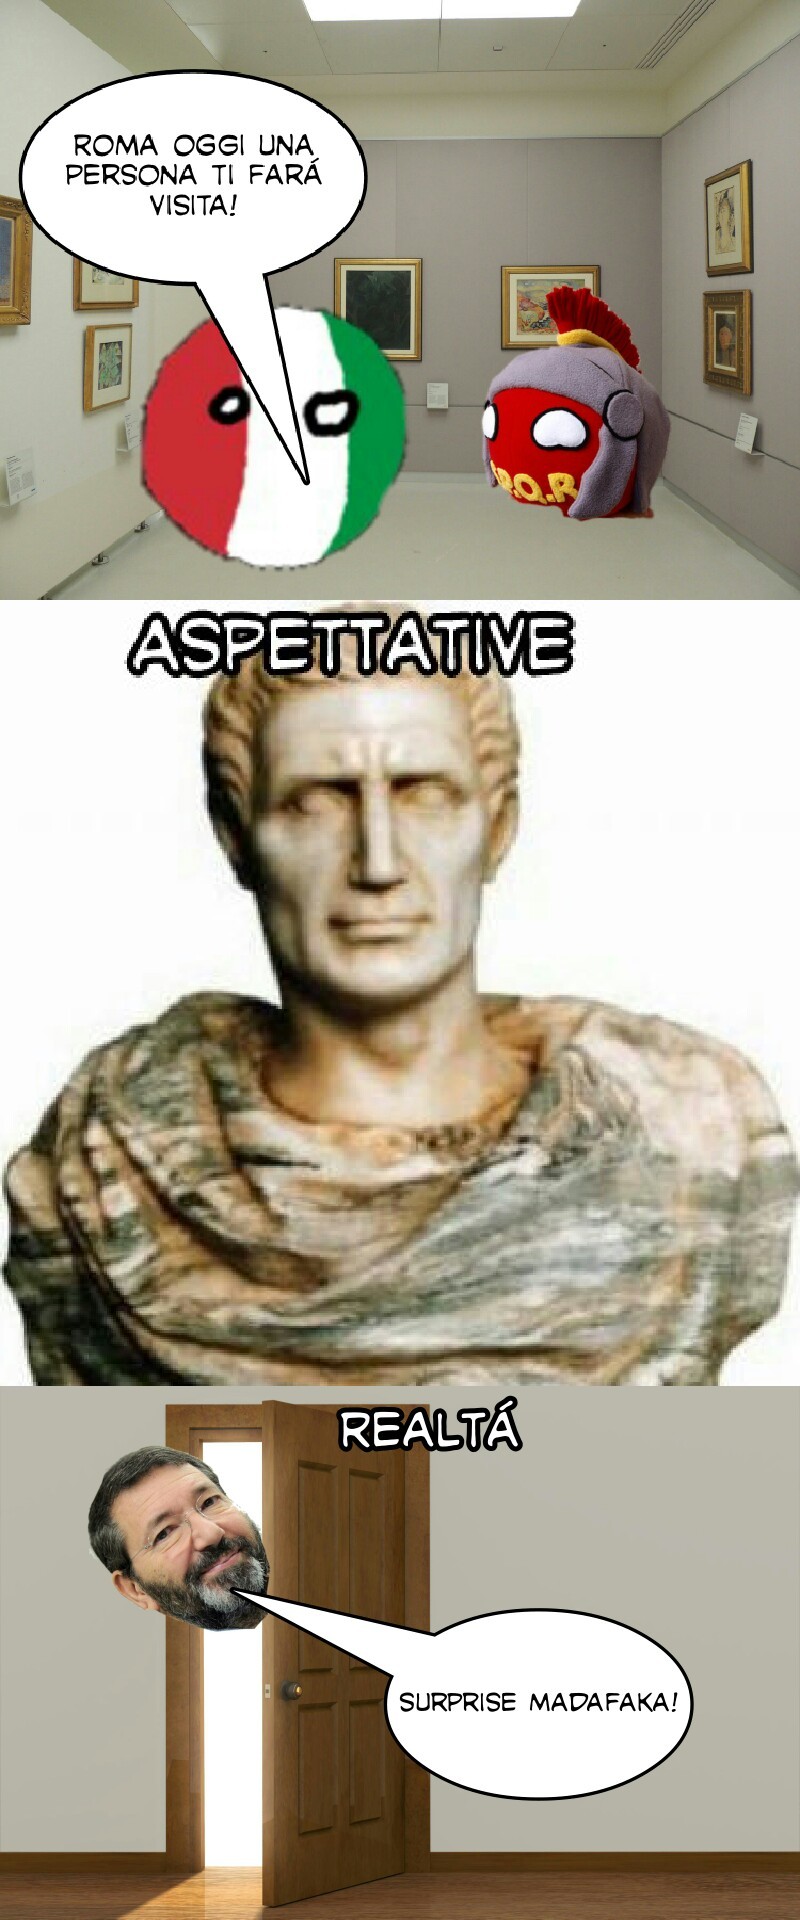 Il busto è Giulio Cesare, nell'ultima vignetta l'ex sindaco Marino - meme